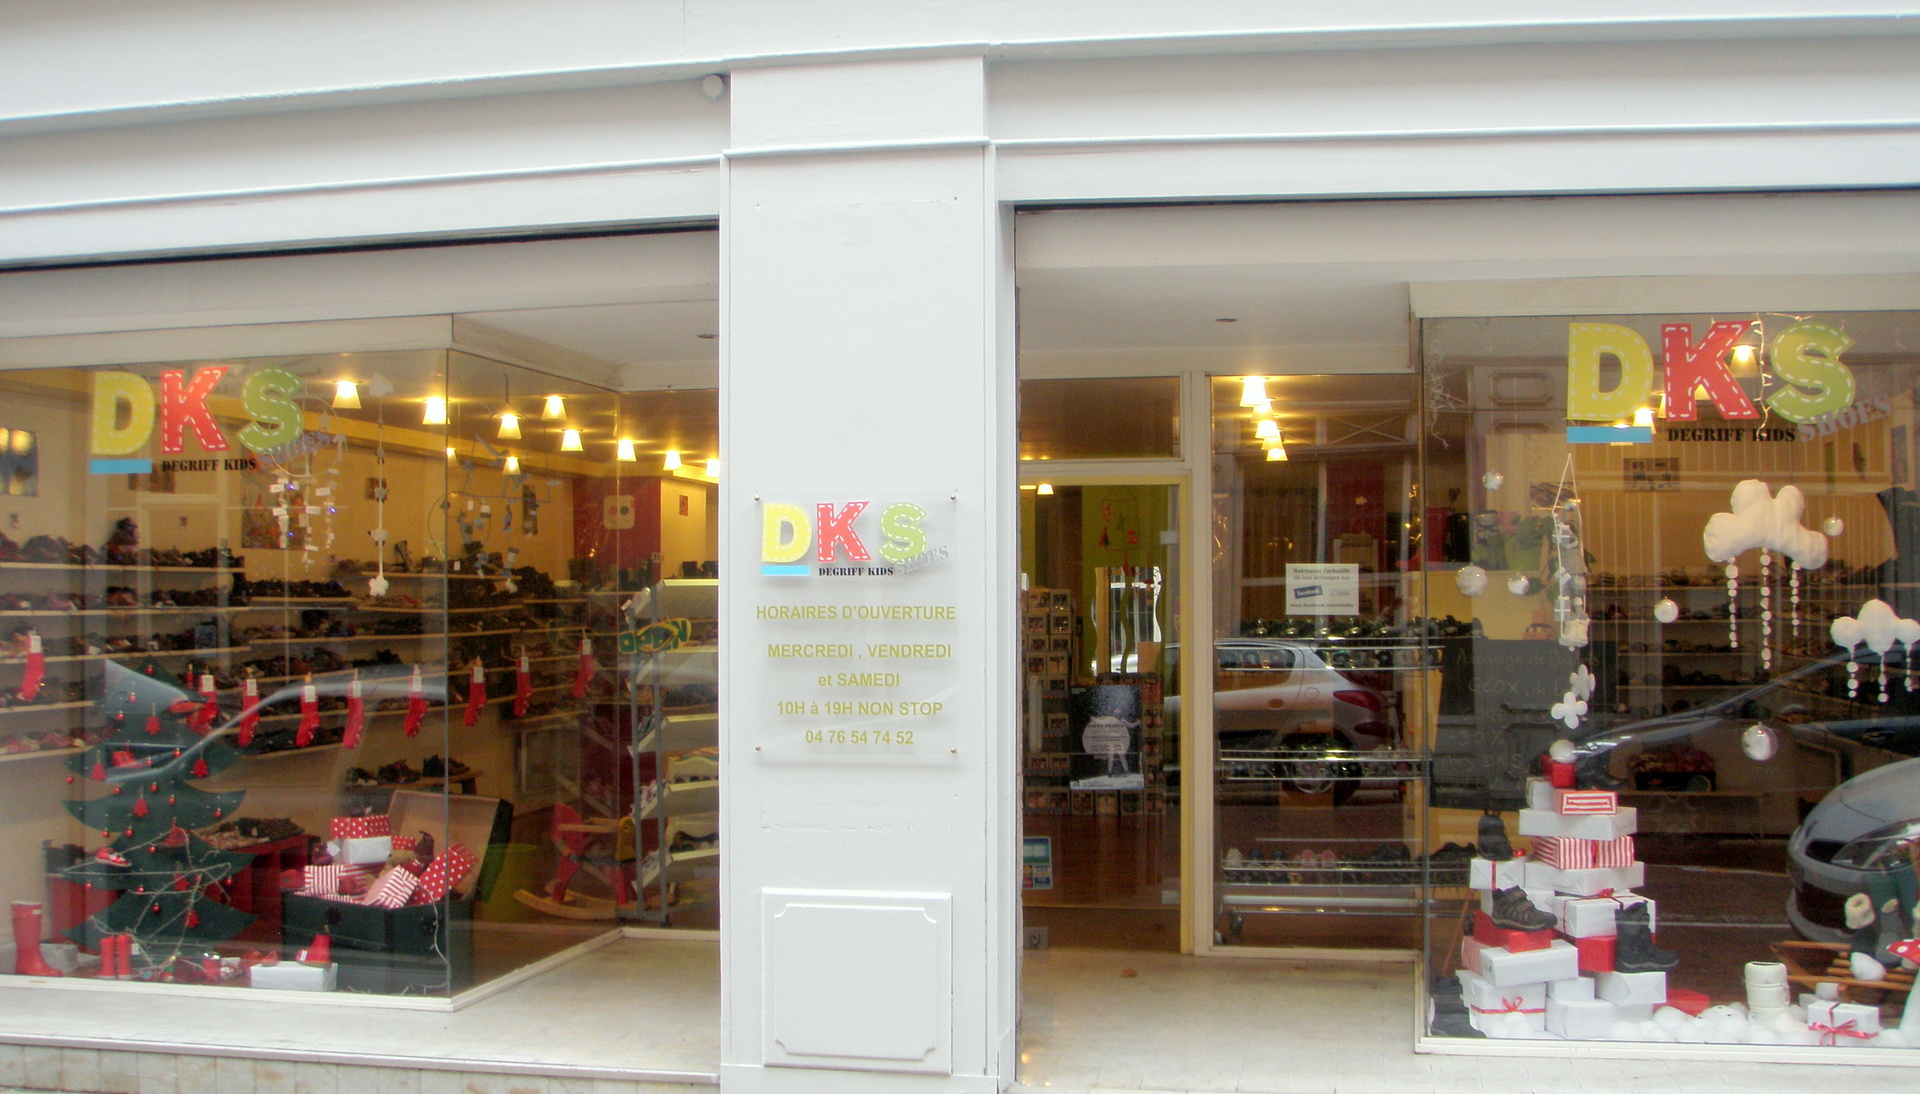 Boutique DKS - Dgriff Kids Shoes - Grenoble Shopping